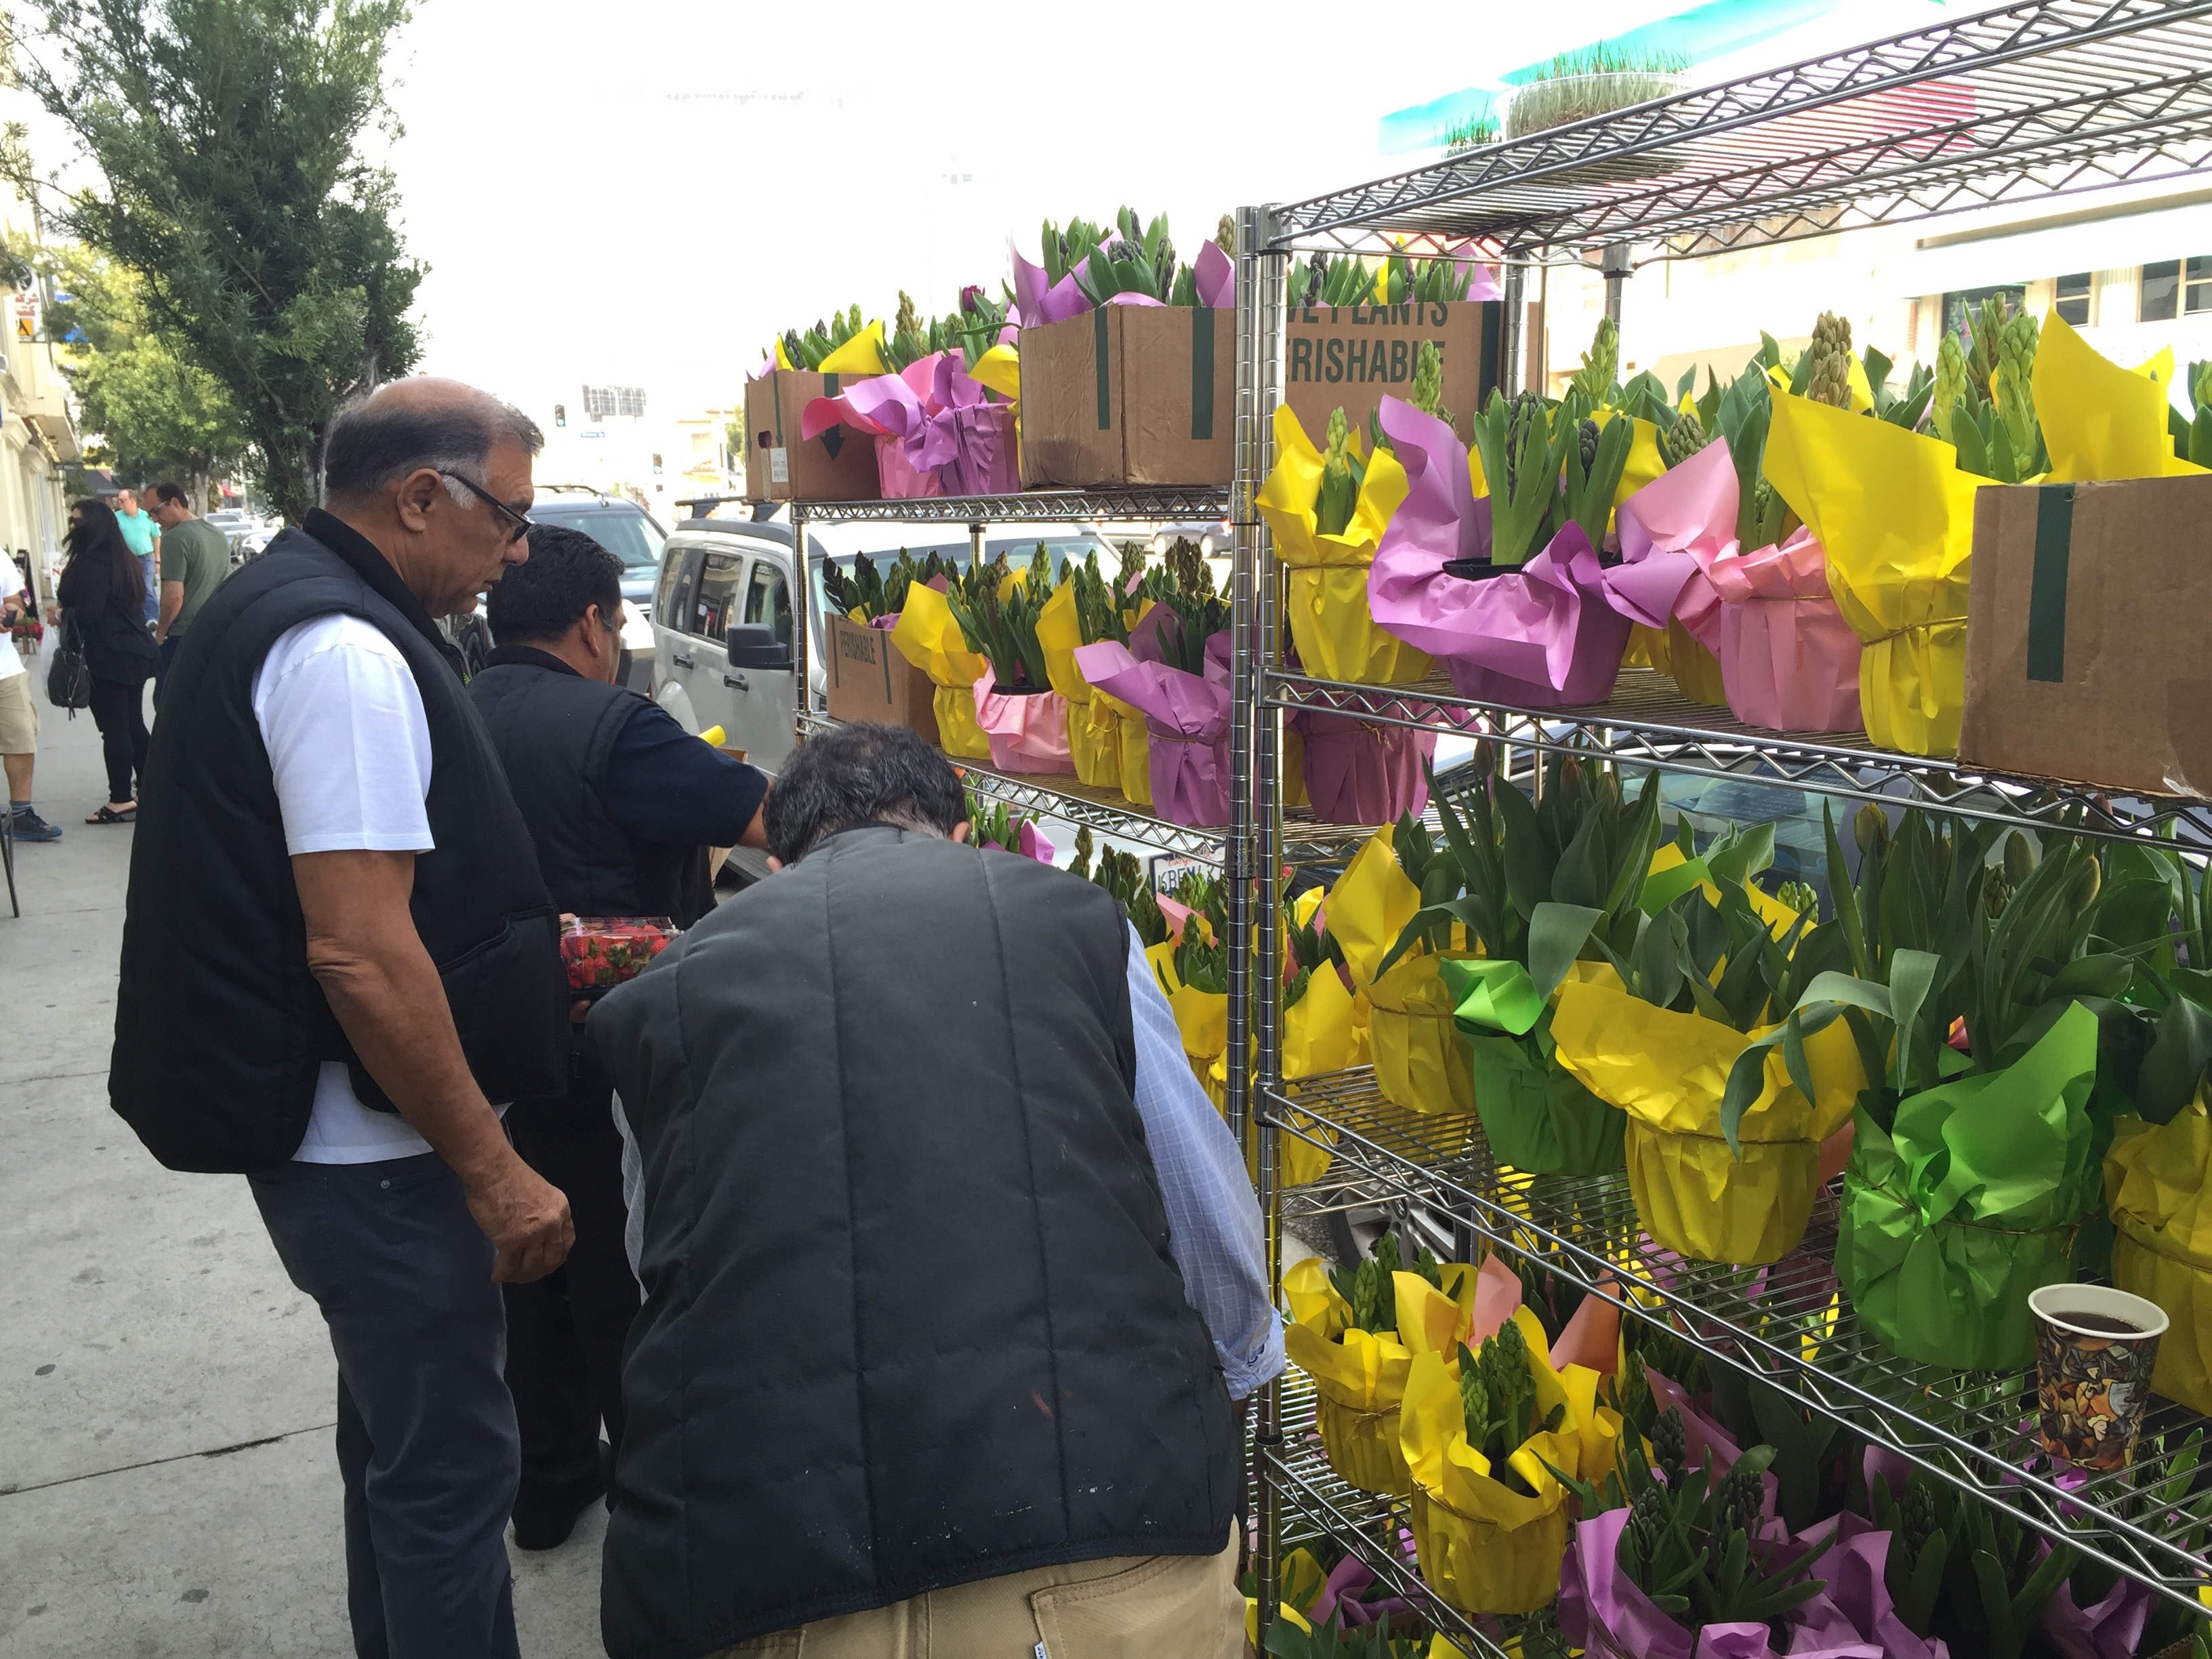 Farid Khanlou selling plants in front of Jordan Market on Westwood Boulevard